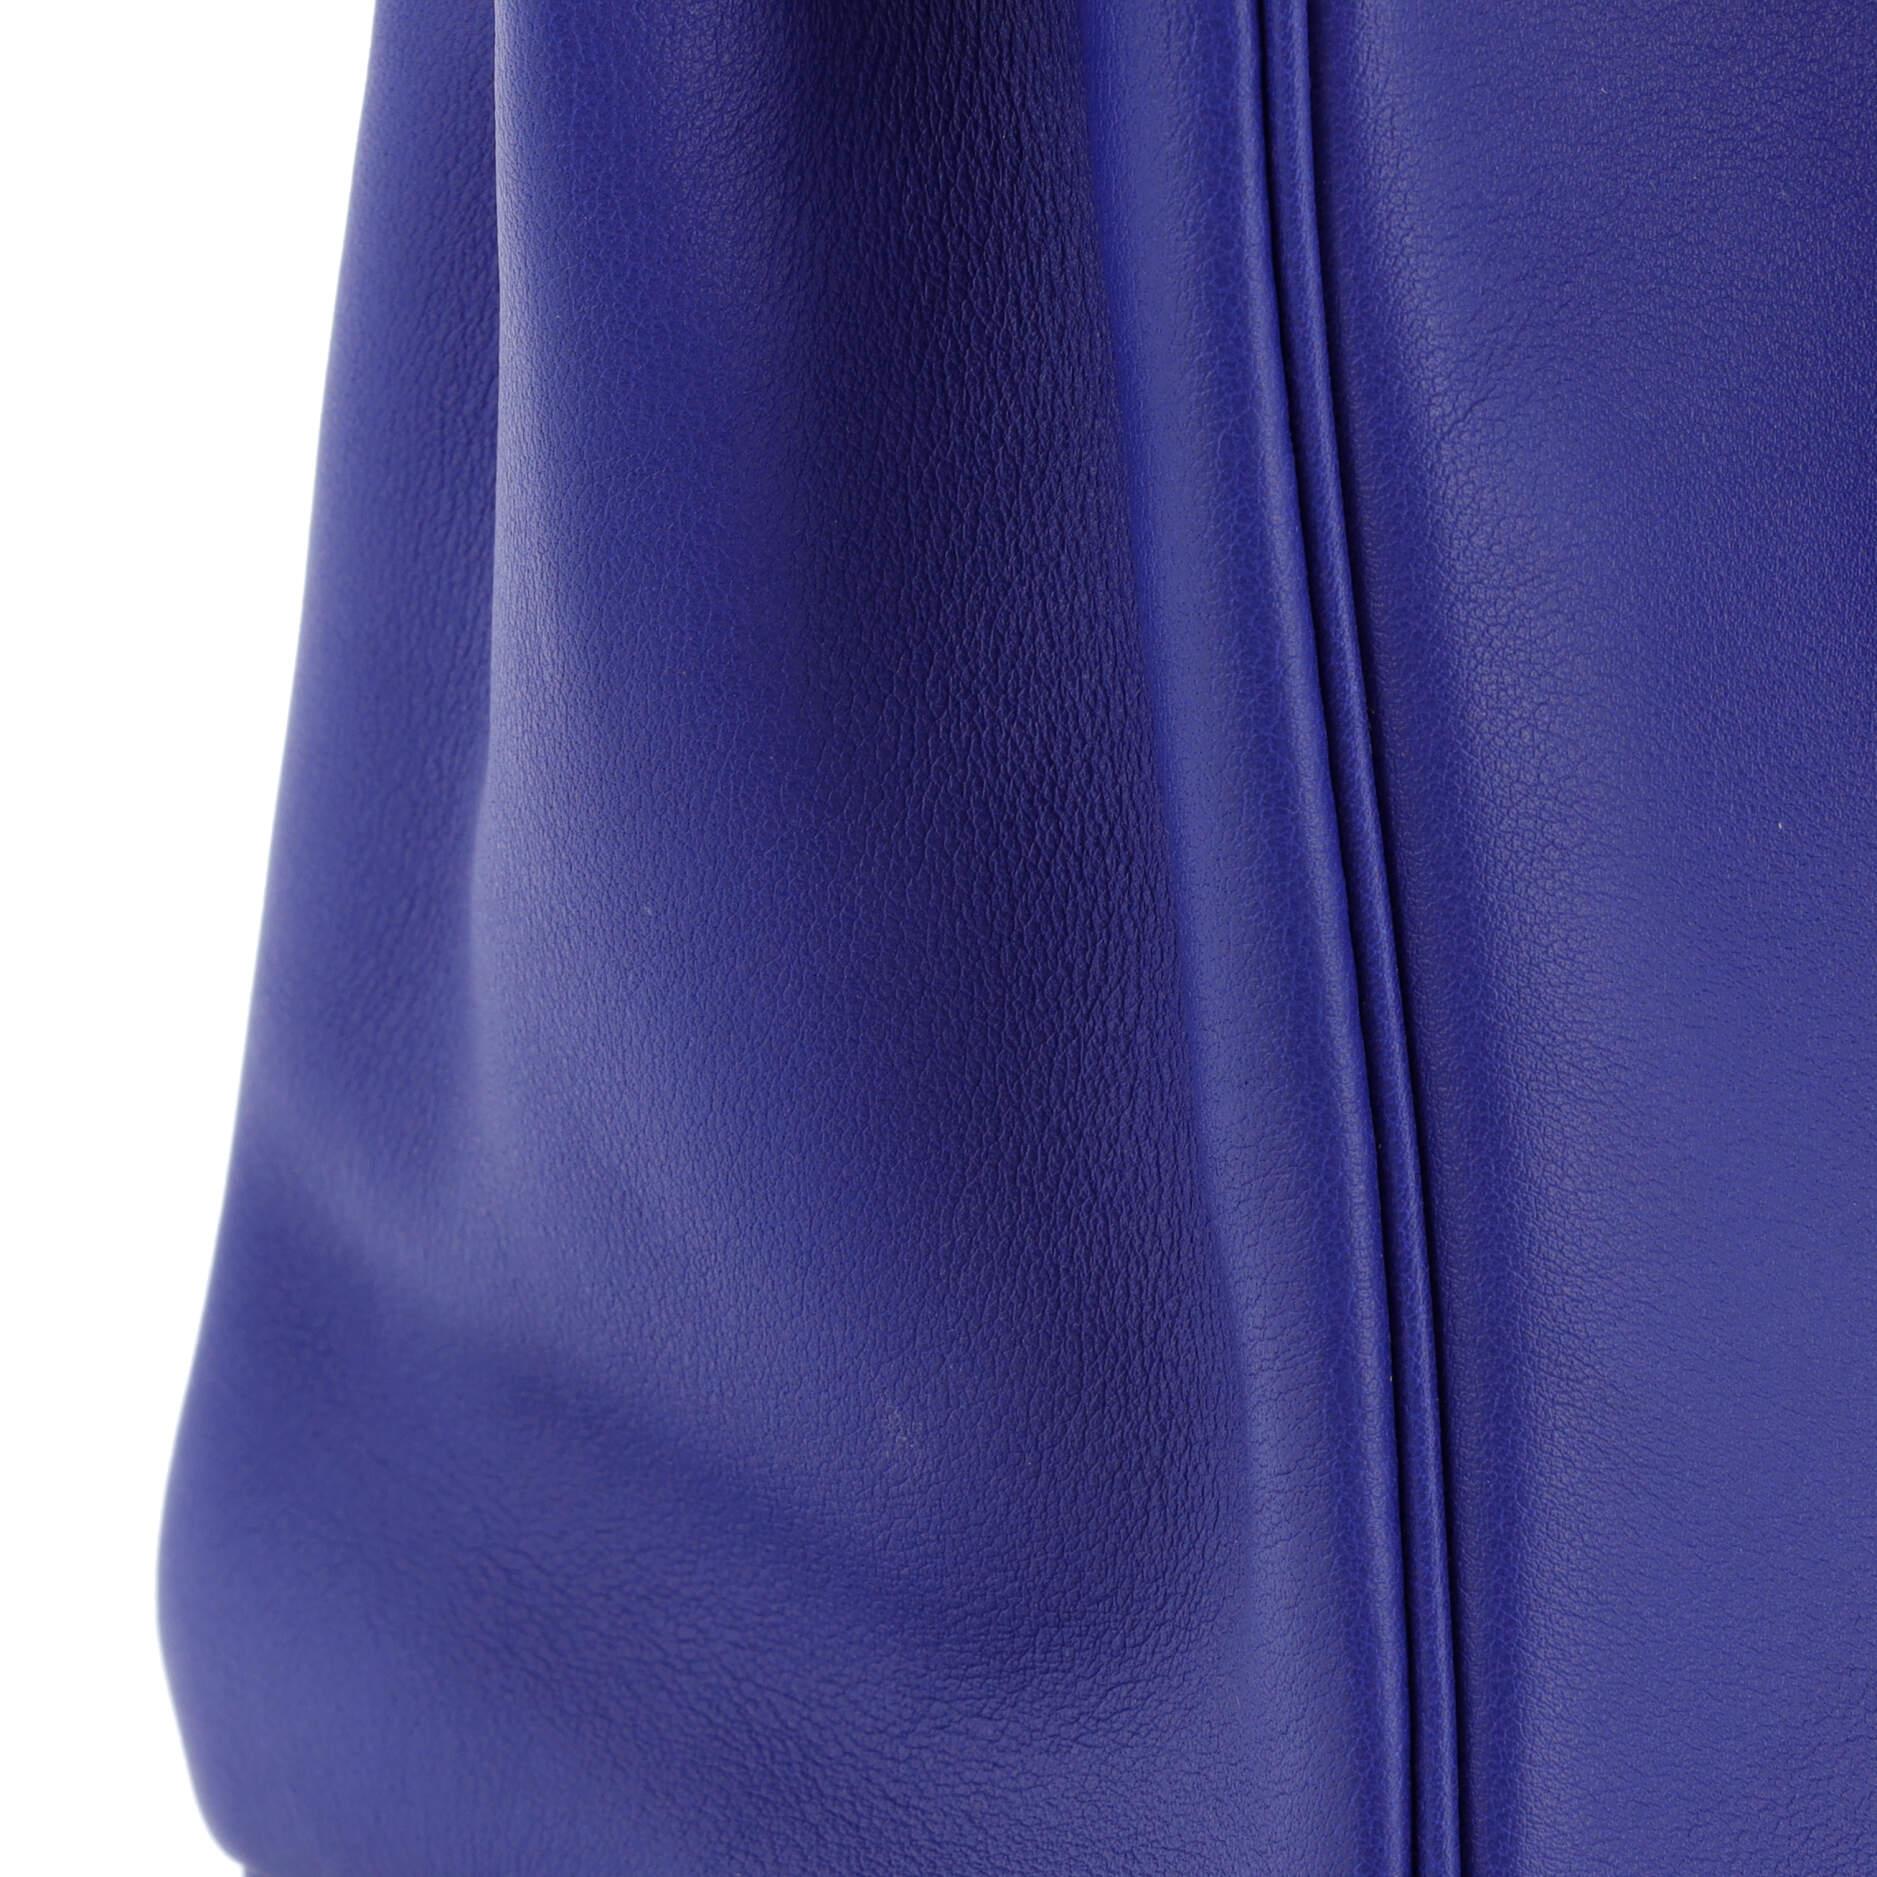 Hermes Birkin Handbag Bleu Electrique Swift with Gold Hardware 25 4